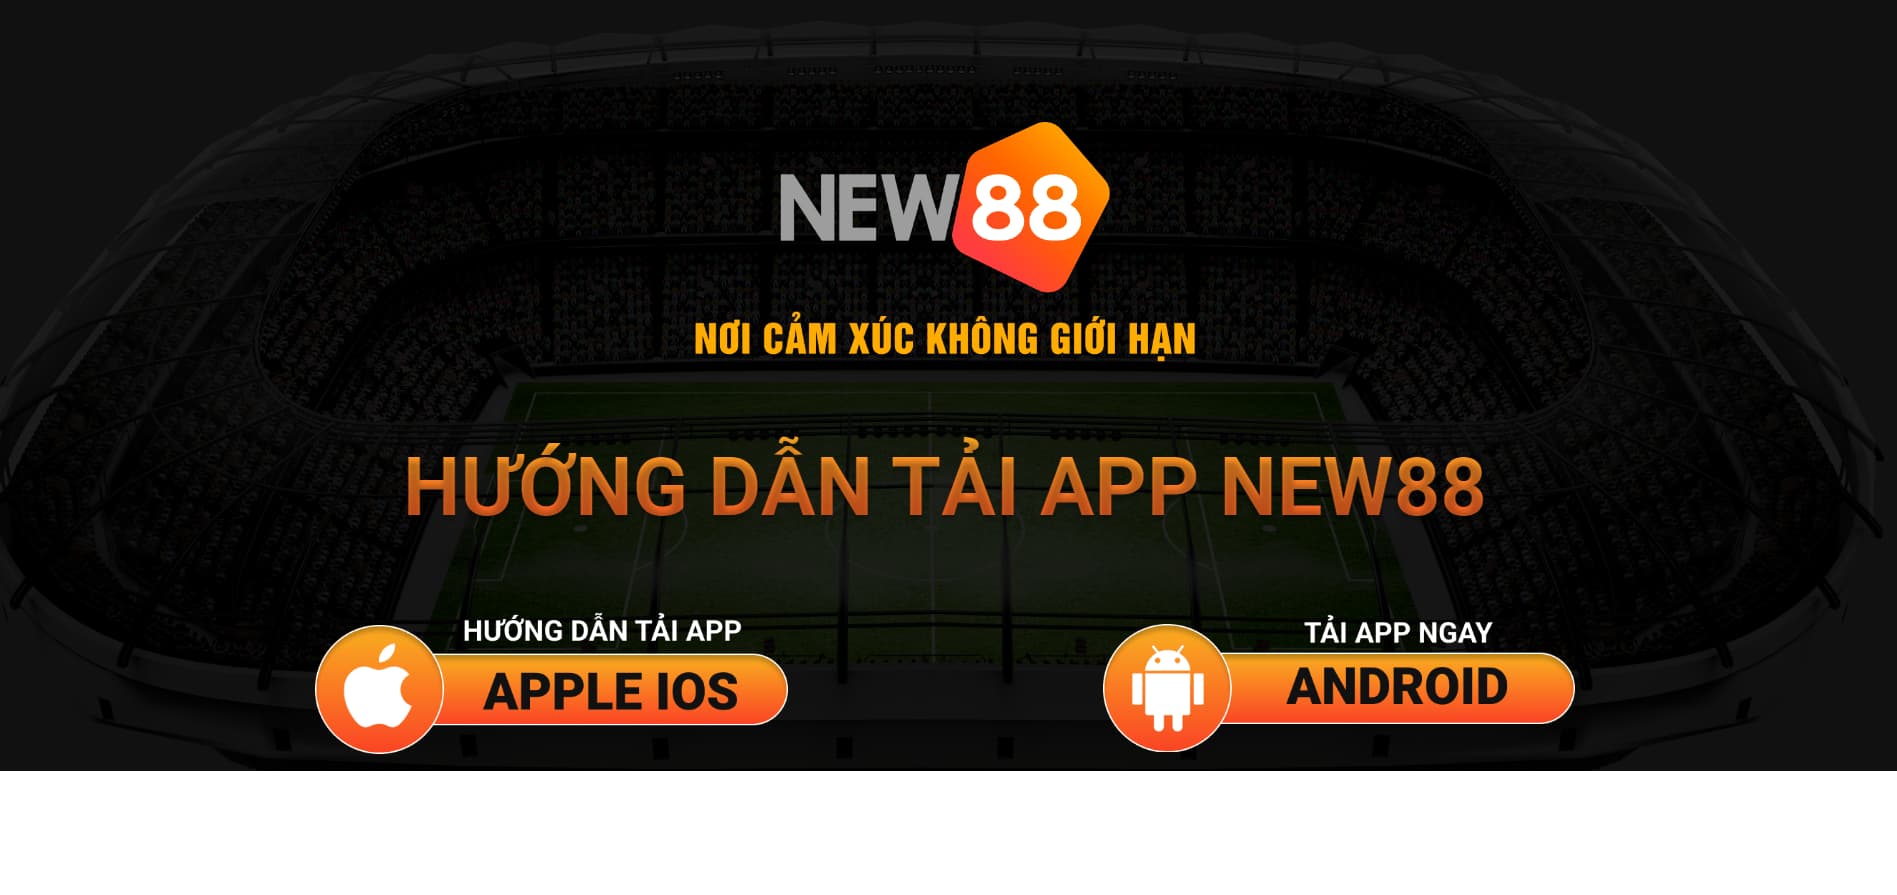 Hướng dẫn chi tiết cách tải app New88 chính xác nhất 